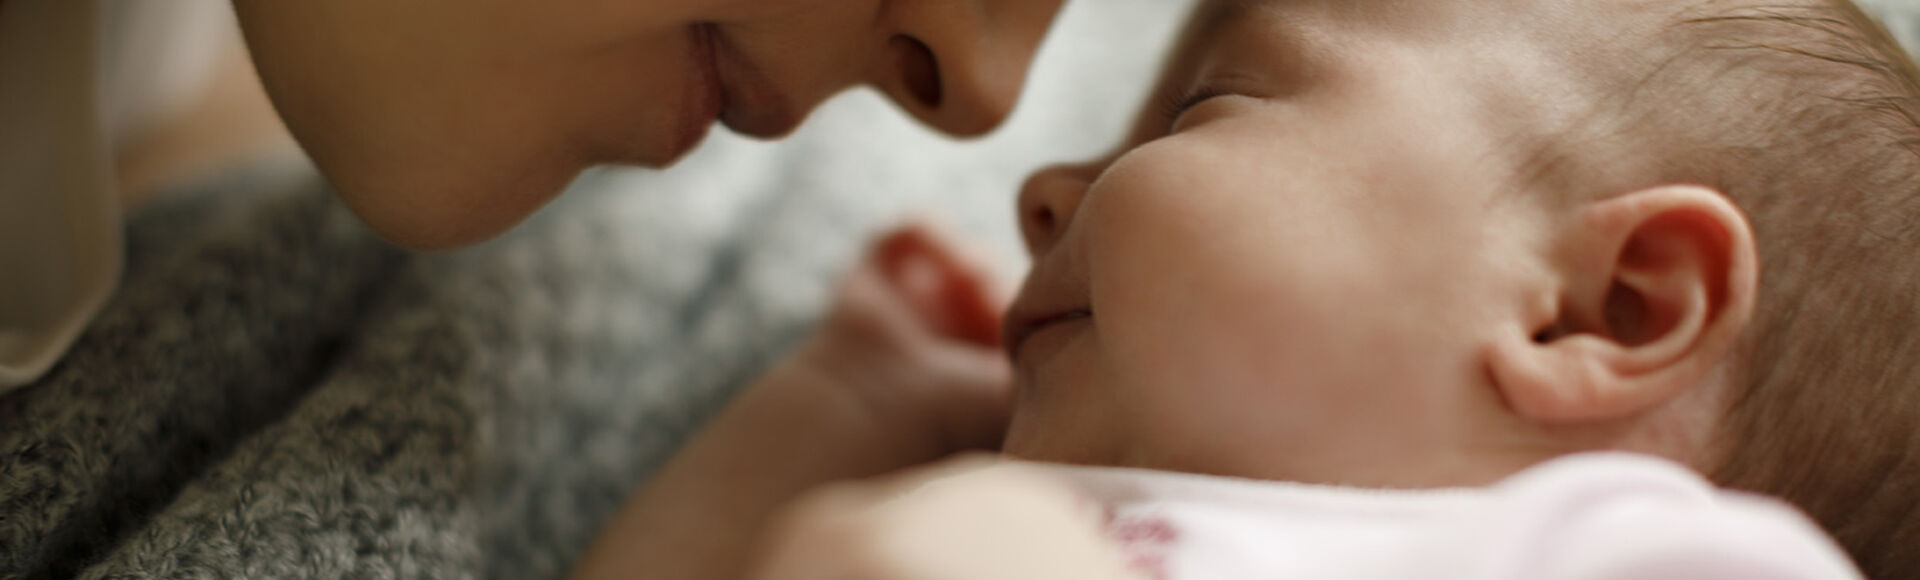 ¿Por qué lloran los bebes?  | Más Abrazos by Huggies